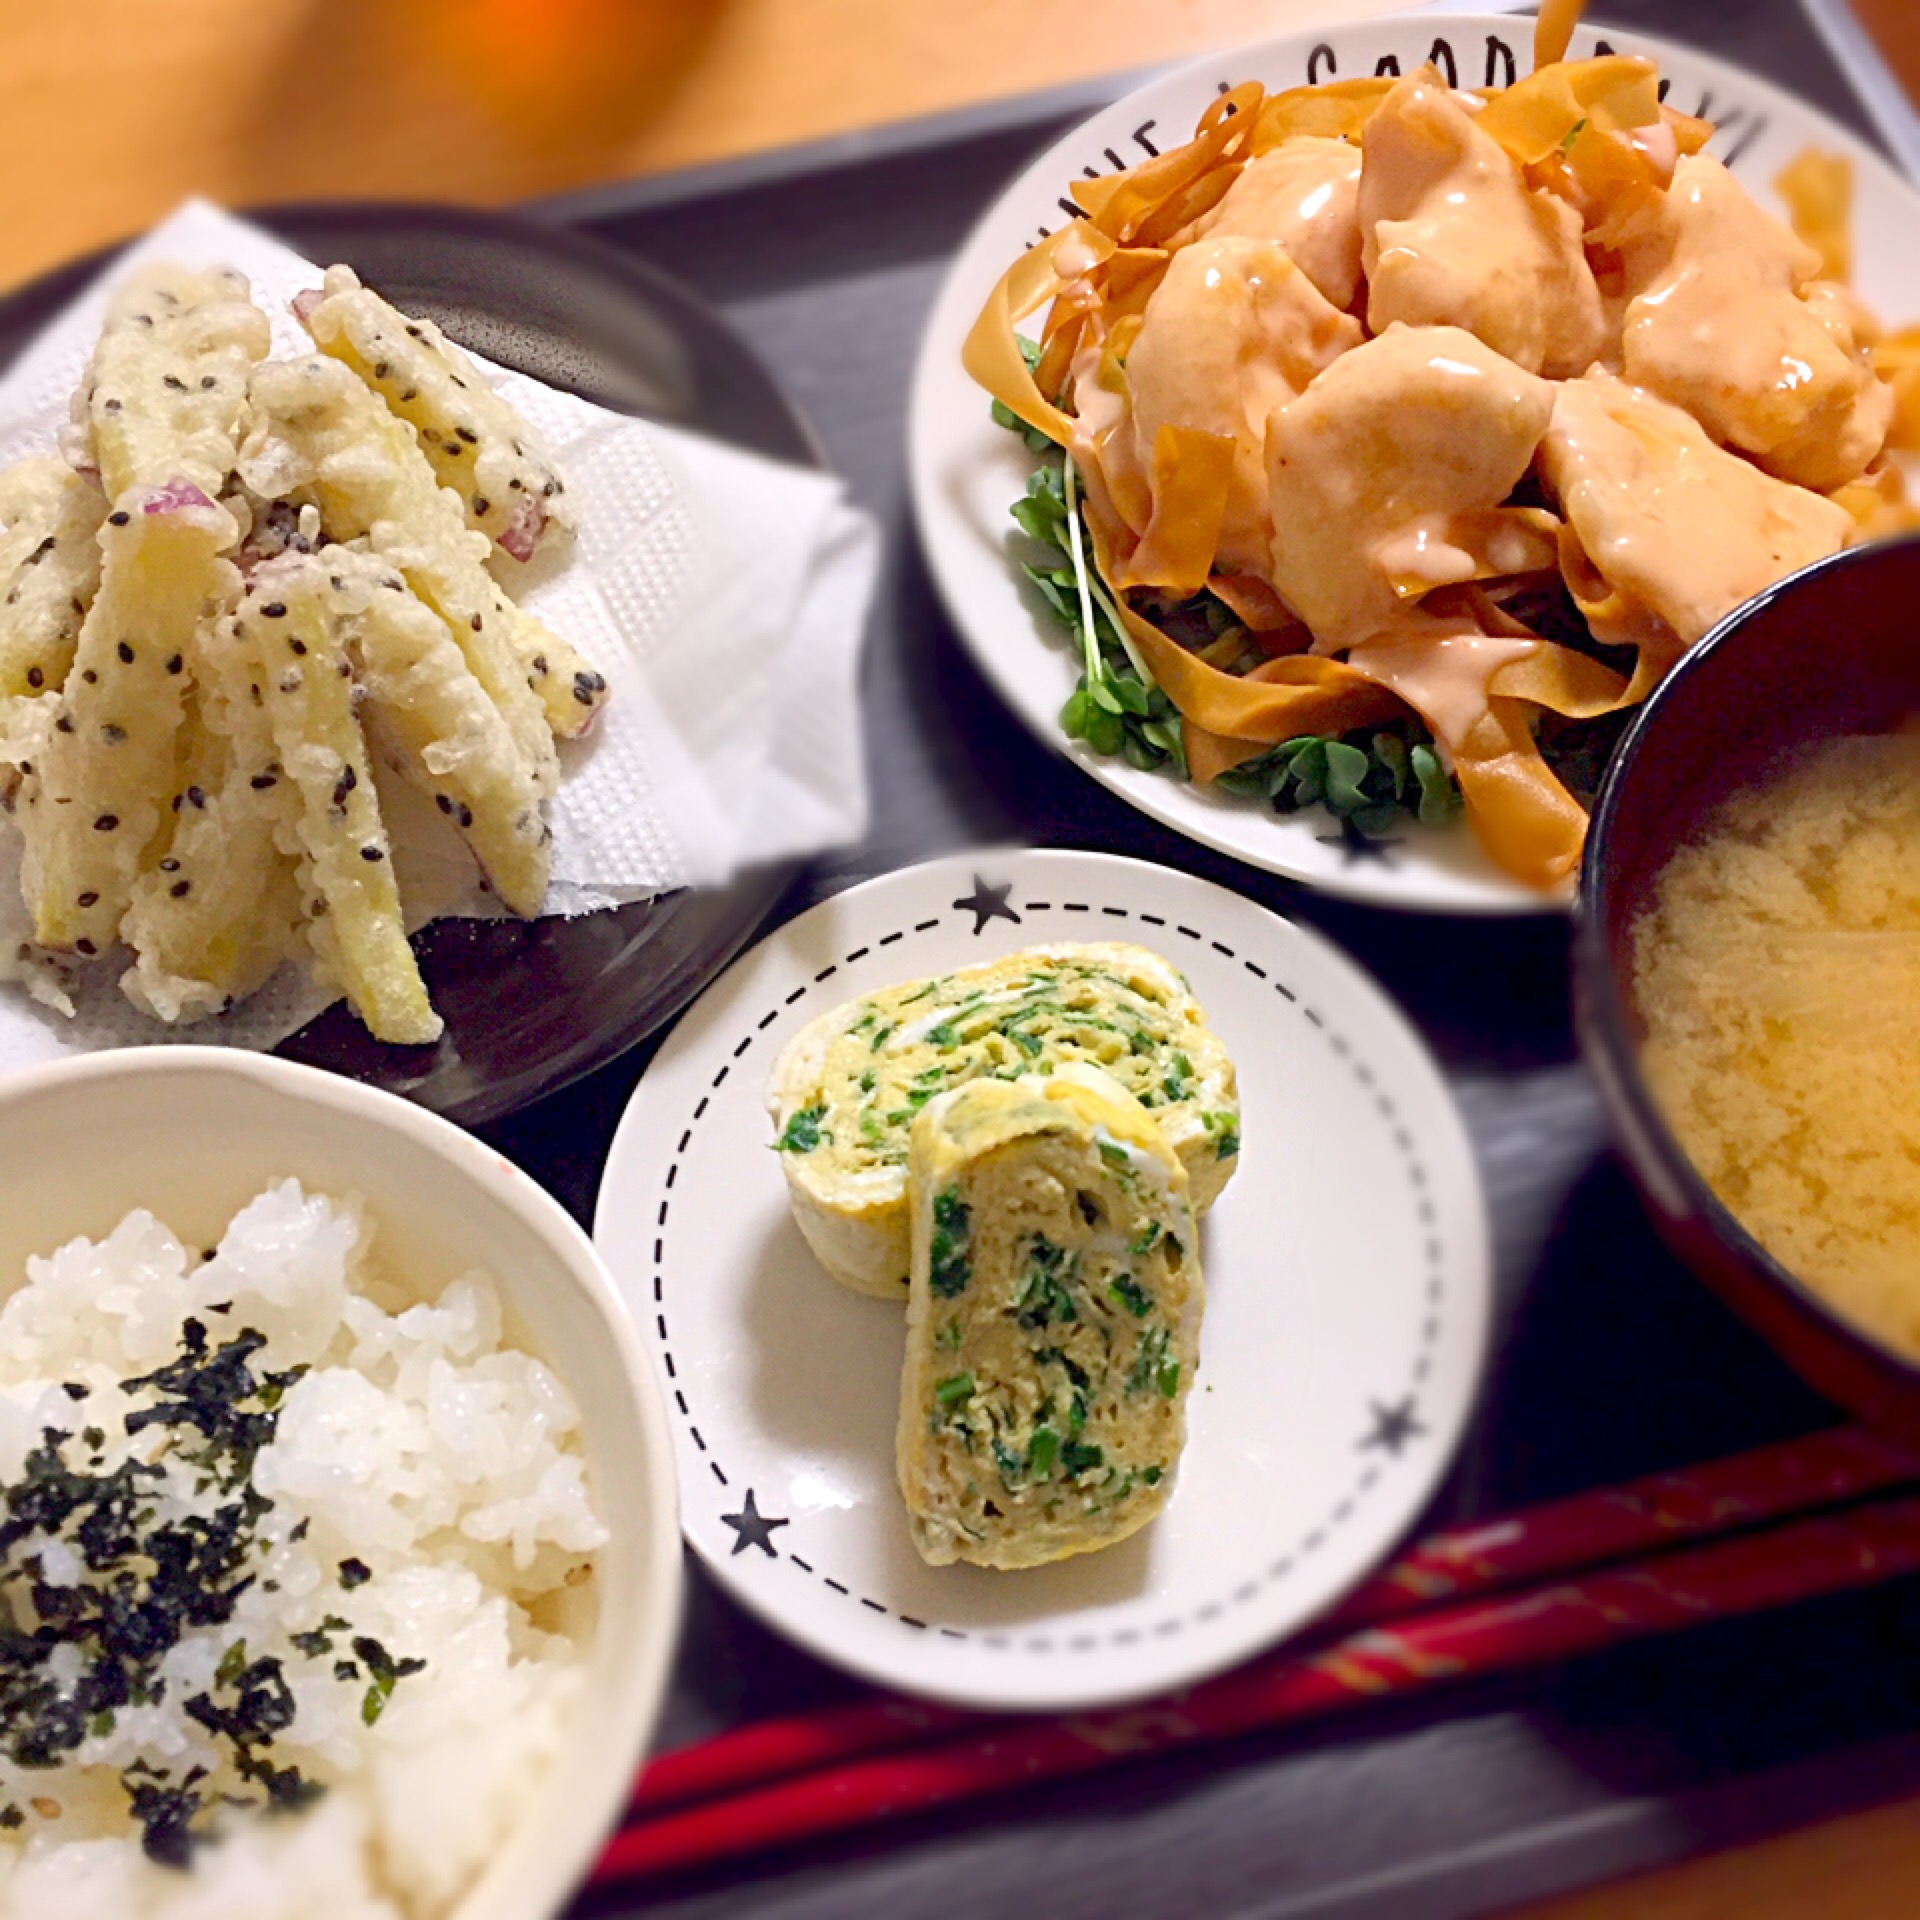 ✱とりマヨ
✱さつまいもの天ぷら
✱ニラ入り卵焼き
✱味噌汁